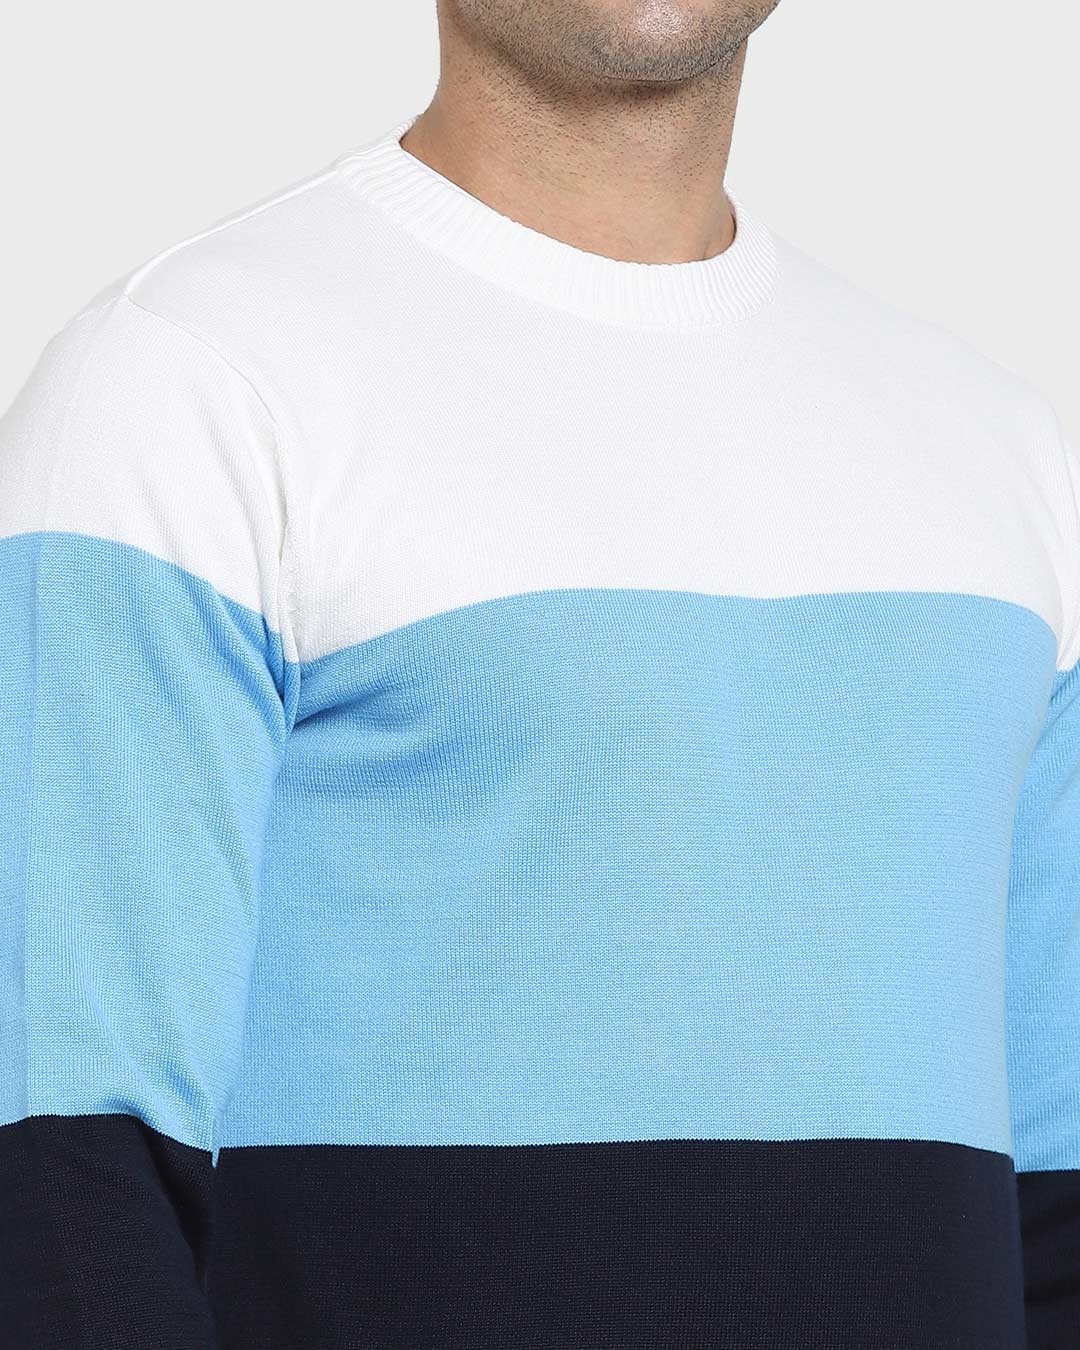 Shop Men's Blue & White Color Block Flat Knit Sweater